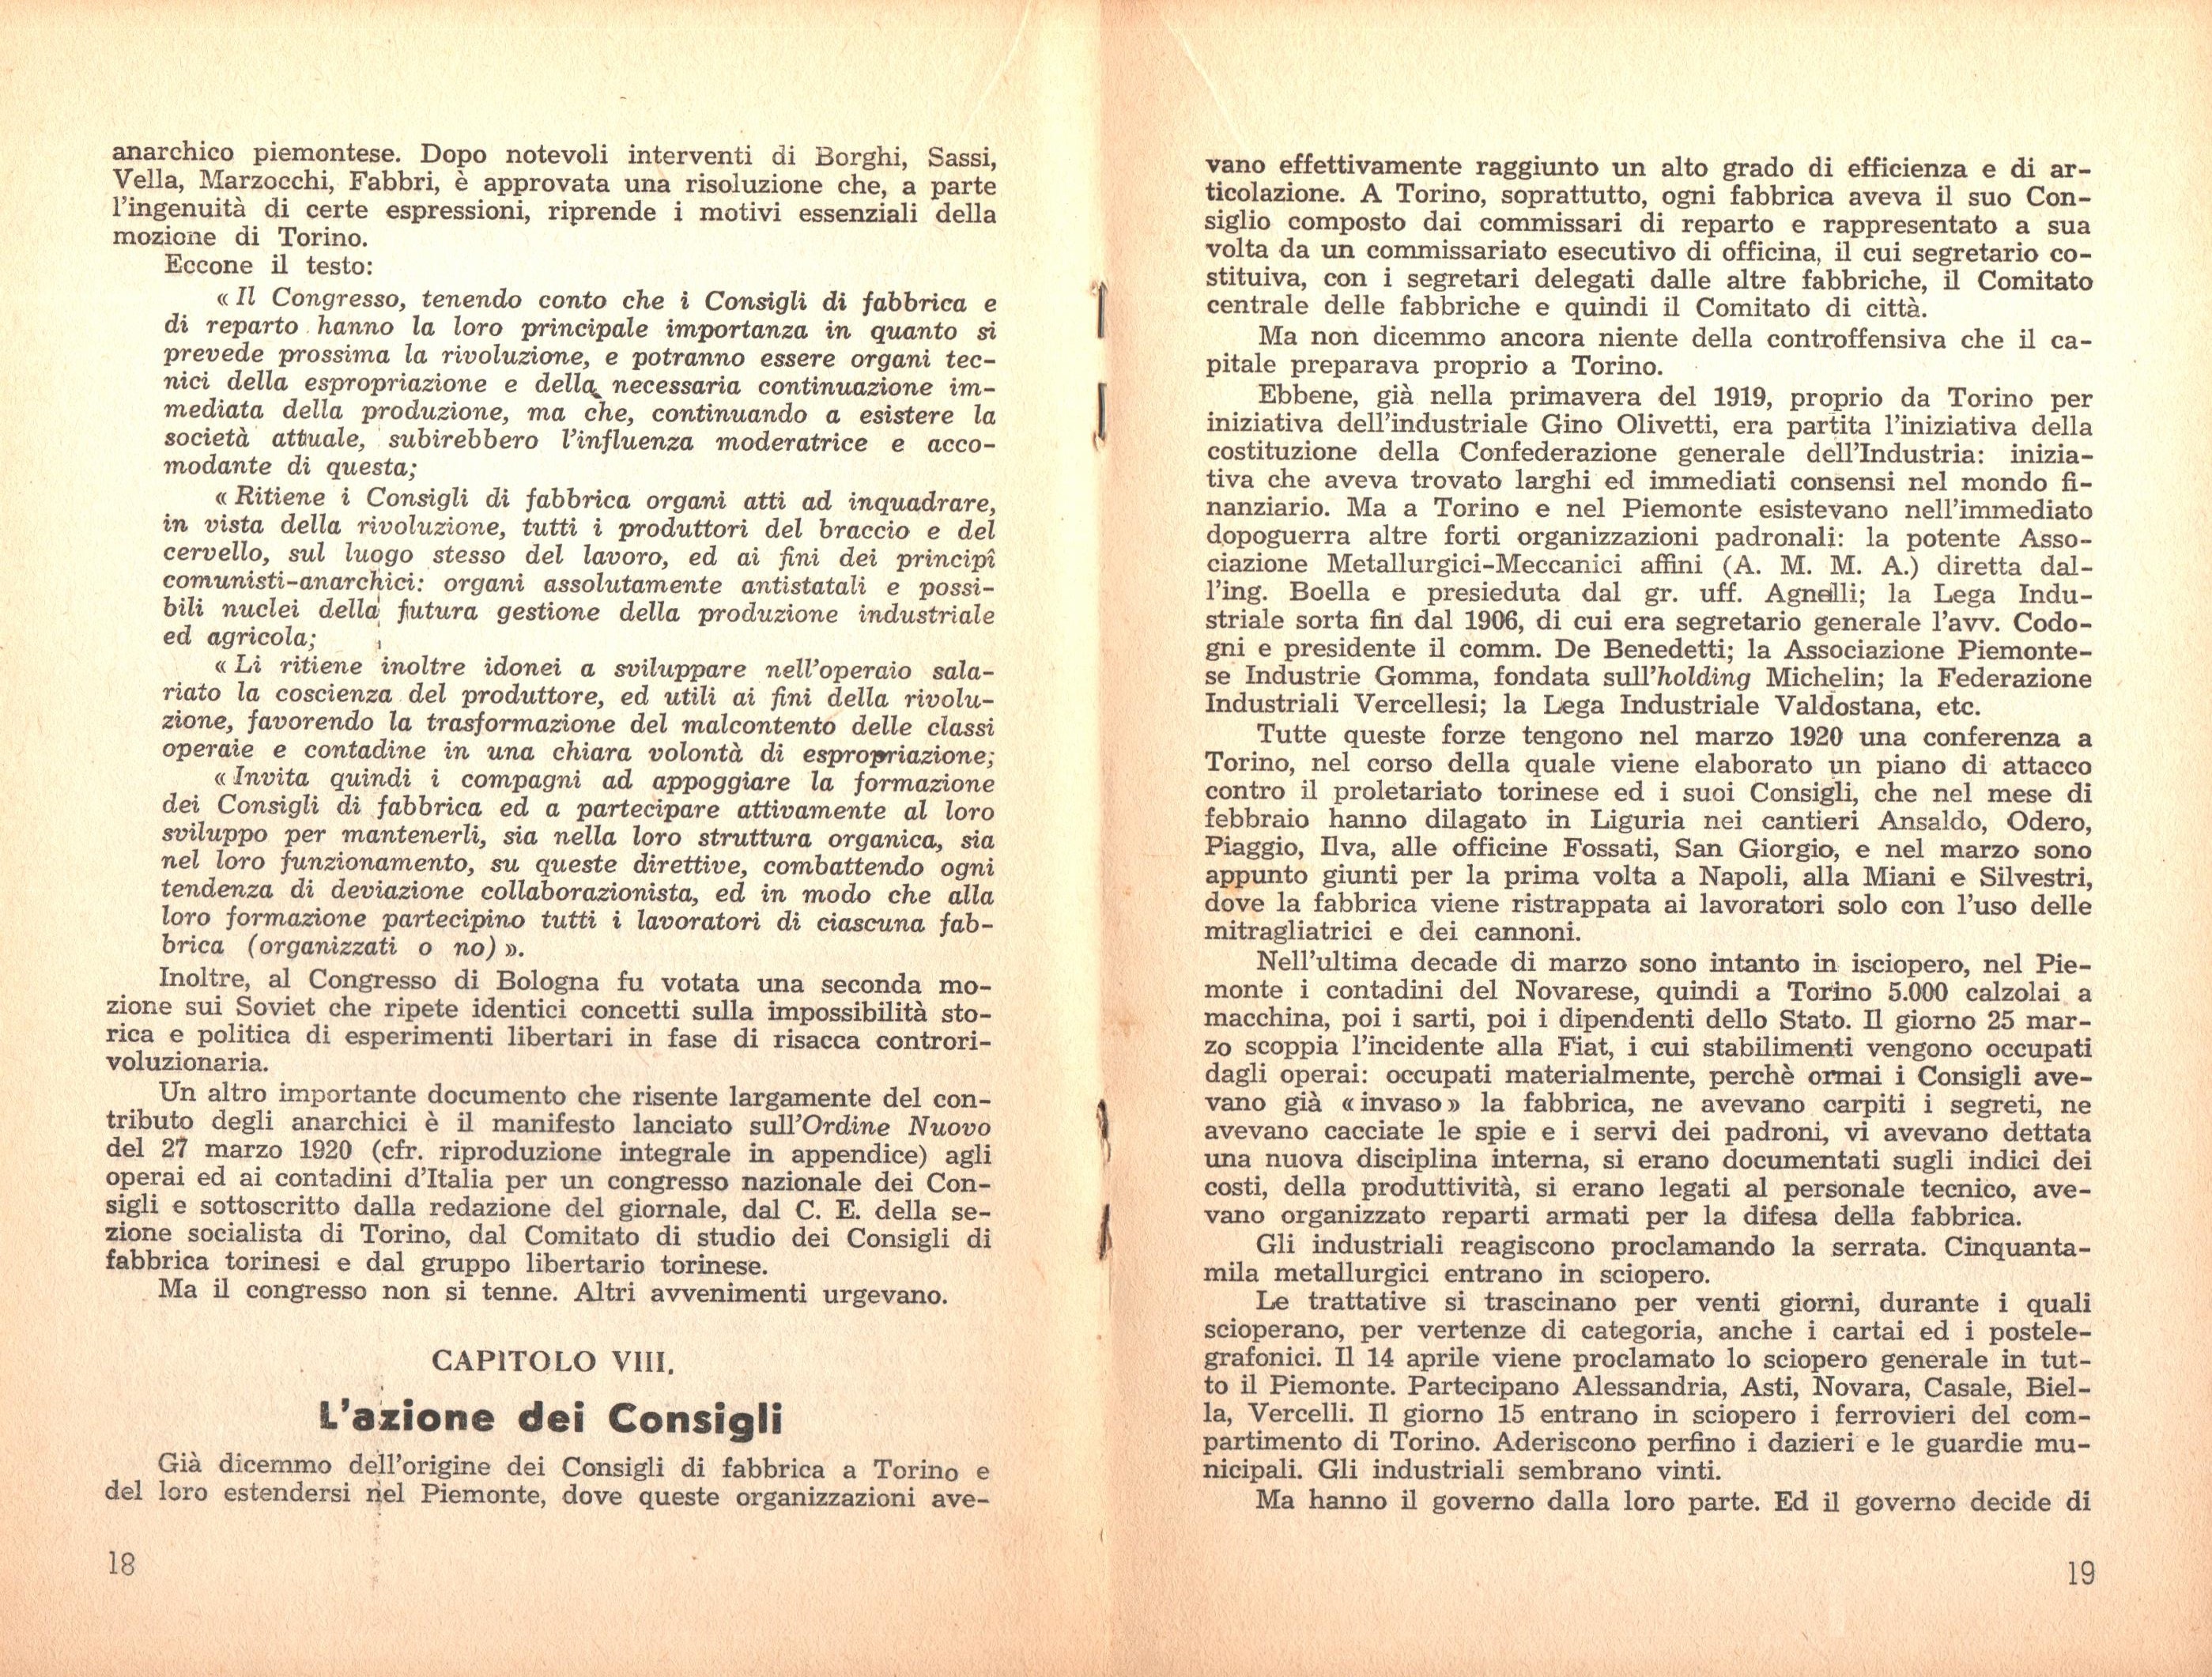 P. C. Masini, Anarchici e comunisti nel movimento dei Consigli a Torino - pag. 11